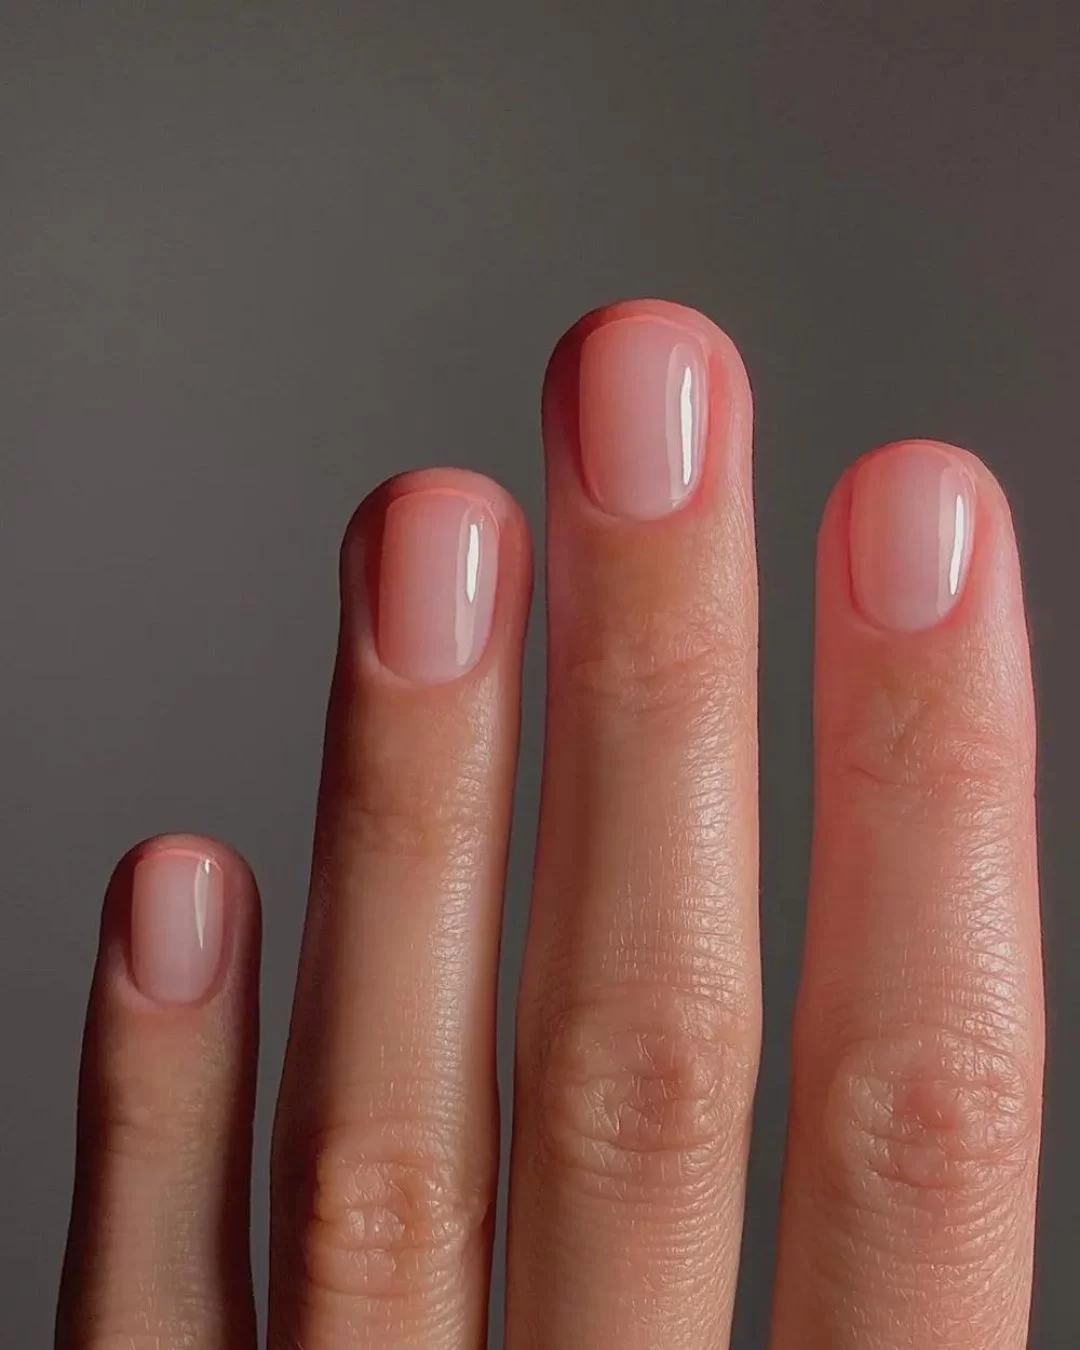 Técnica que imita gloss nas unhas (Foto: reprodução/Instagram/@matejanova/Vogue) Lorena Bueri